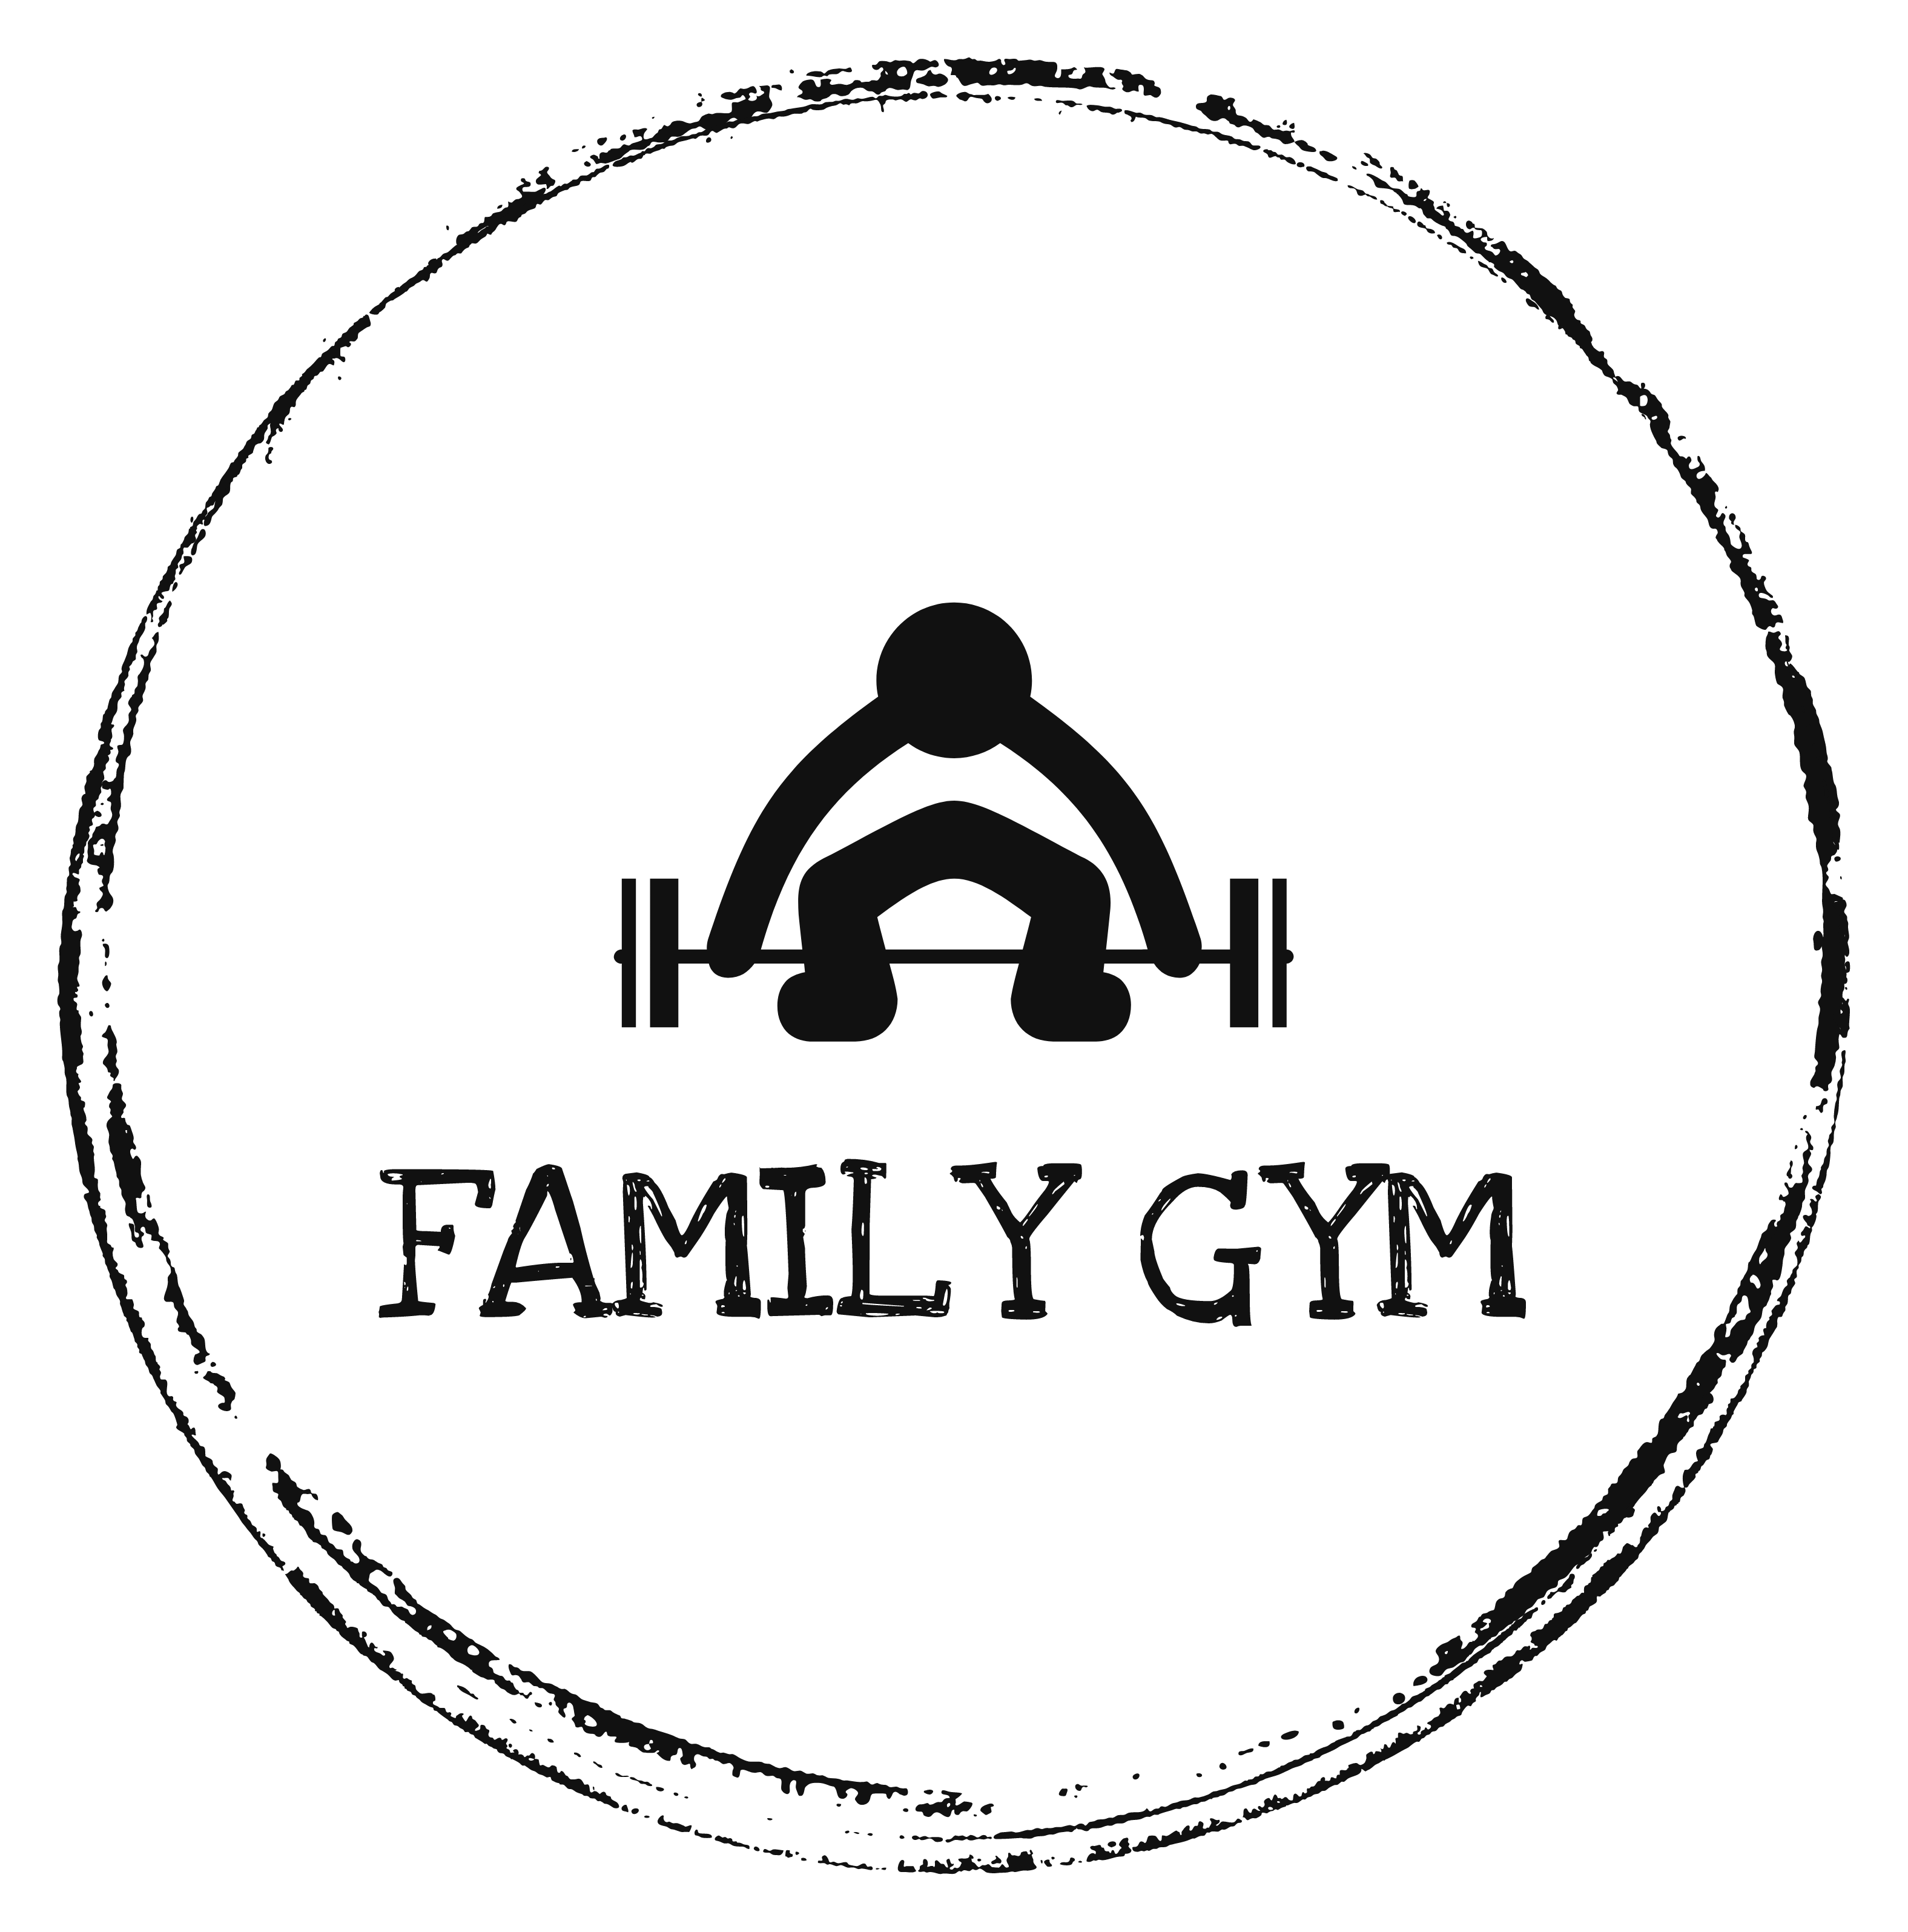 Family gym